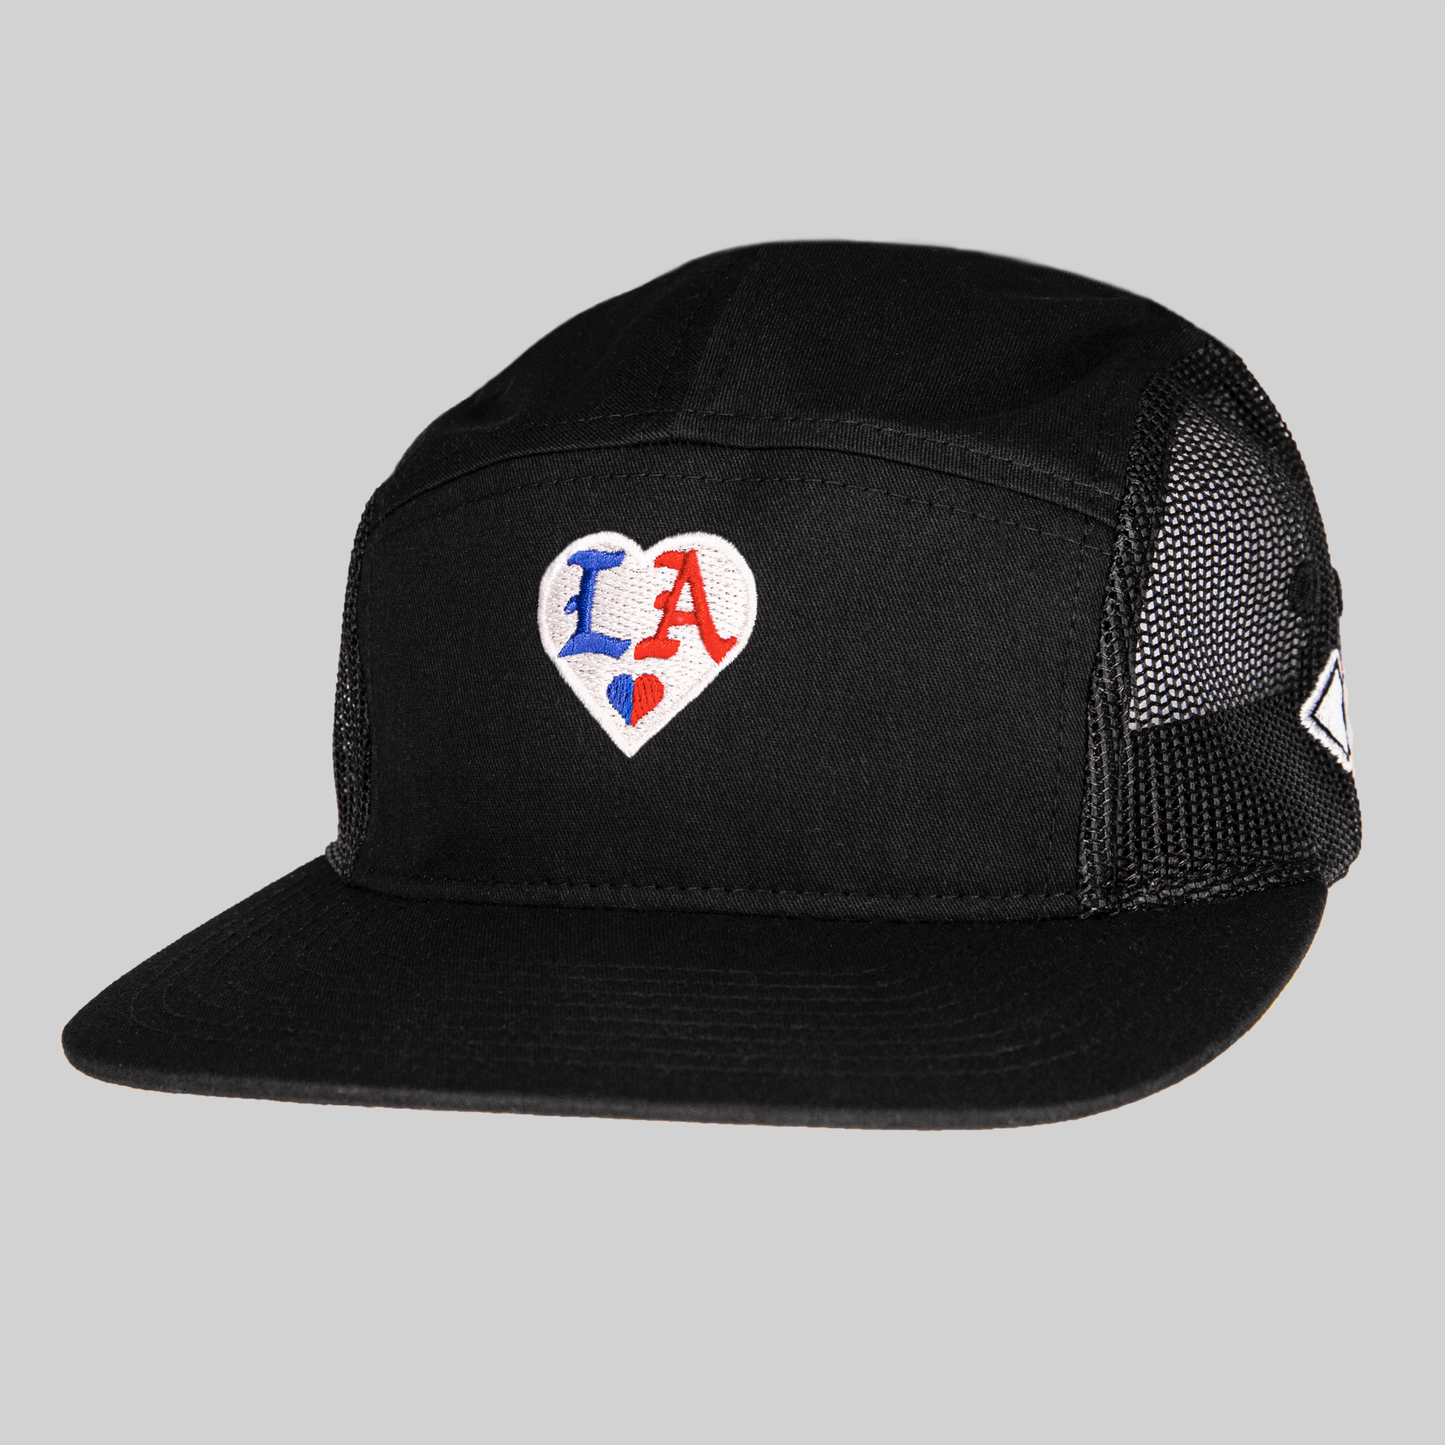 L A • HEART_ Cotton Twill/Mesh Trucker Hat